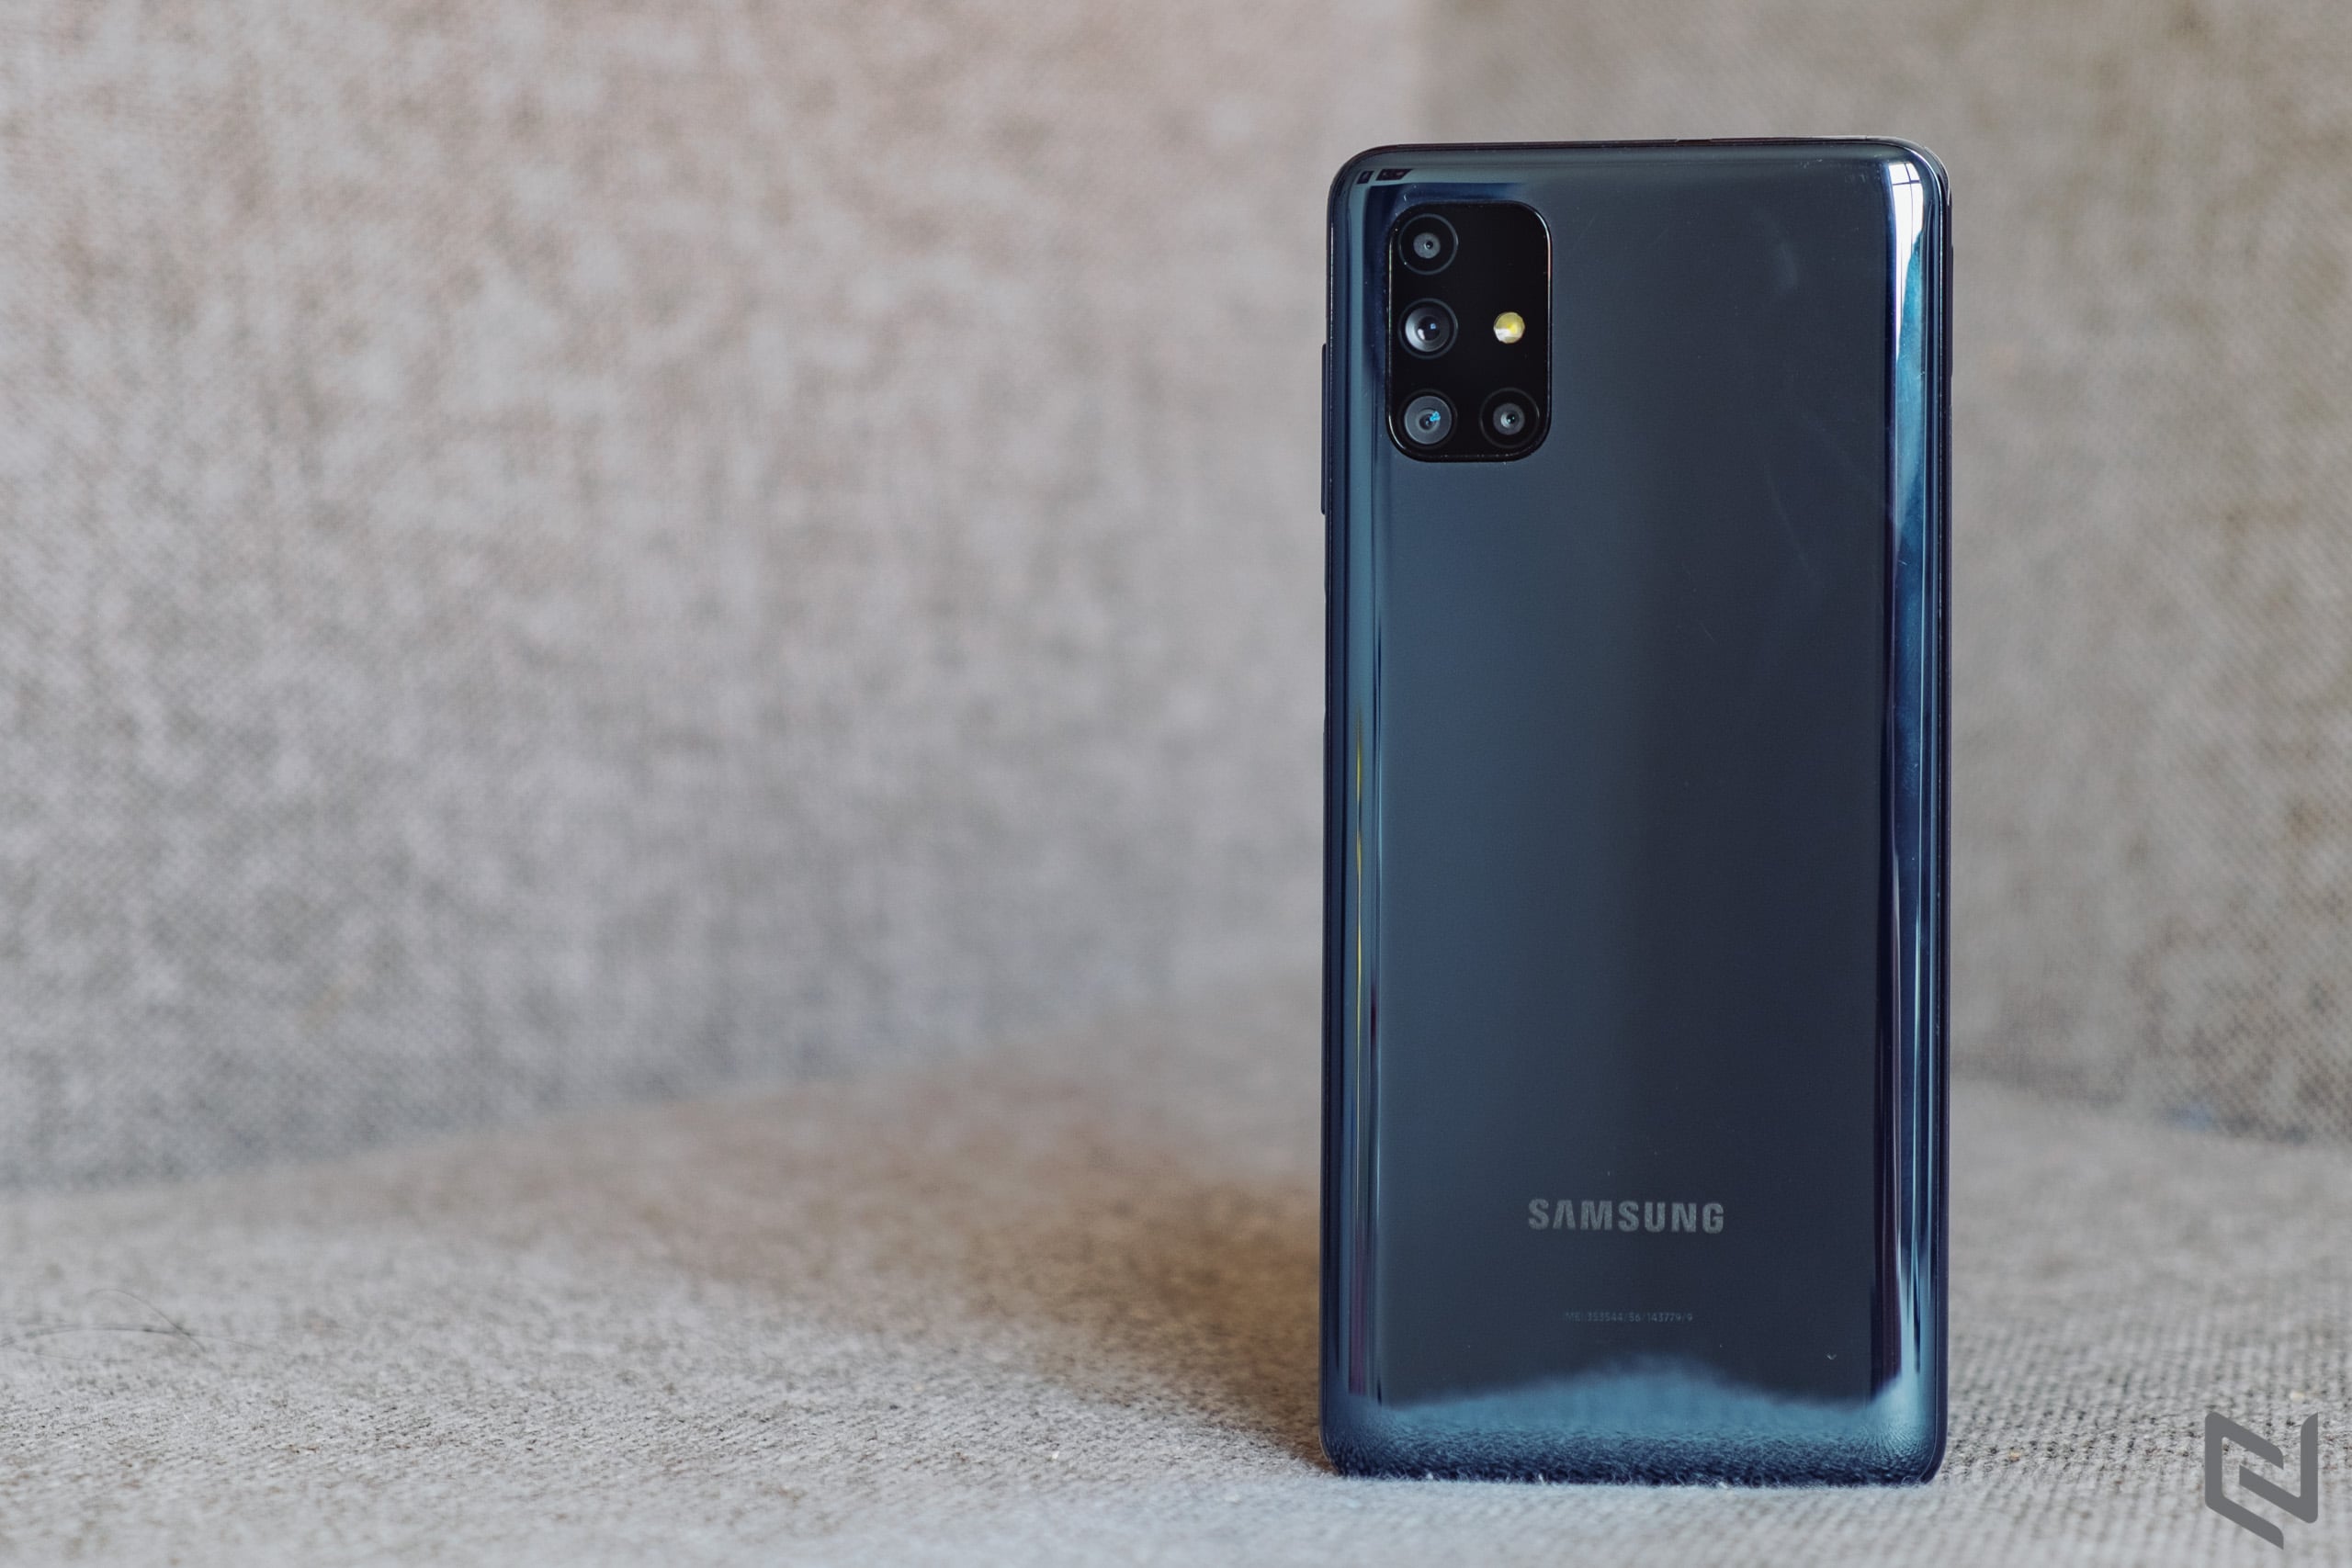 Đánh giá Samsung Galaxy M51: Cấu hình mạnh, pin khủng 7000mAh và 4 camera sau, combo hoàn hảo cho game thủ